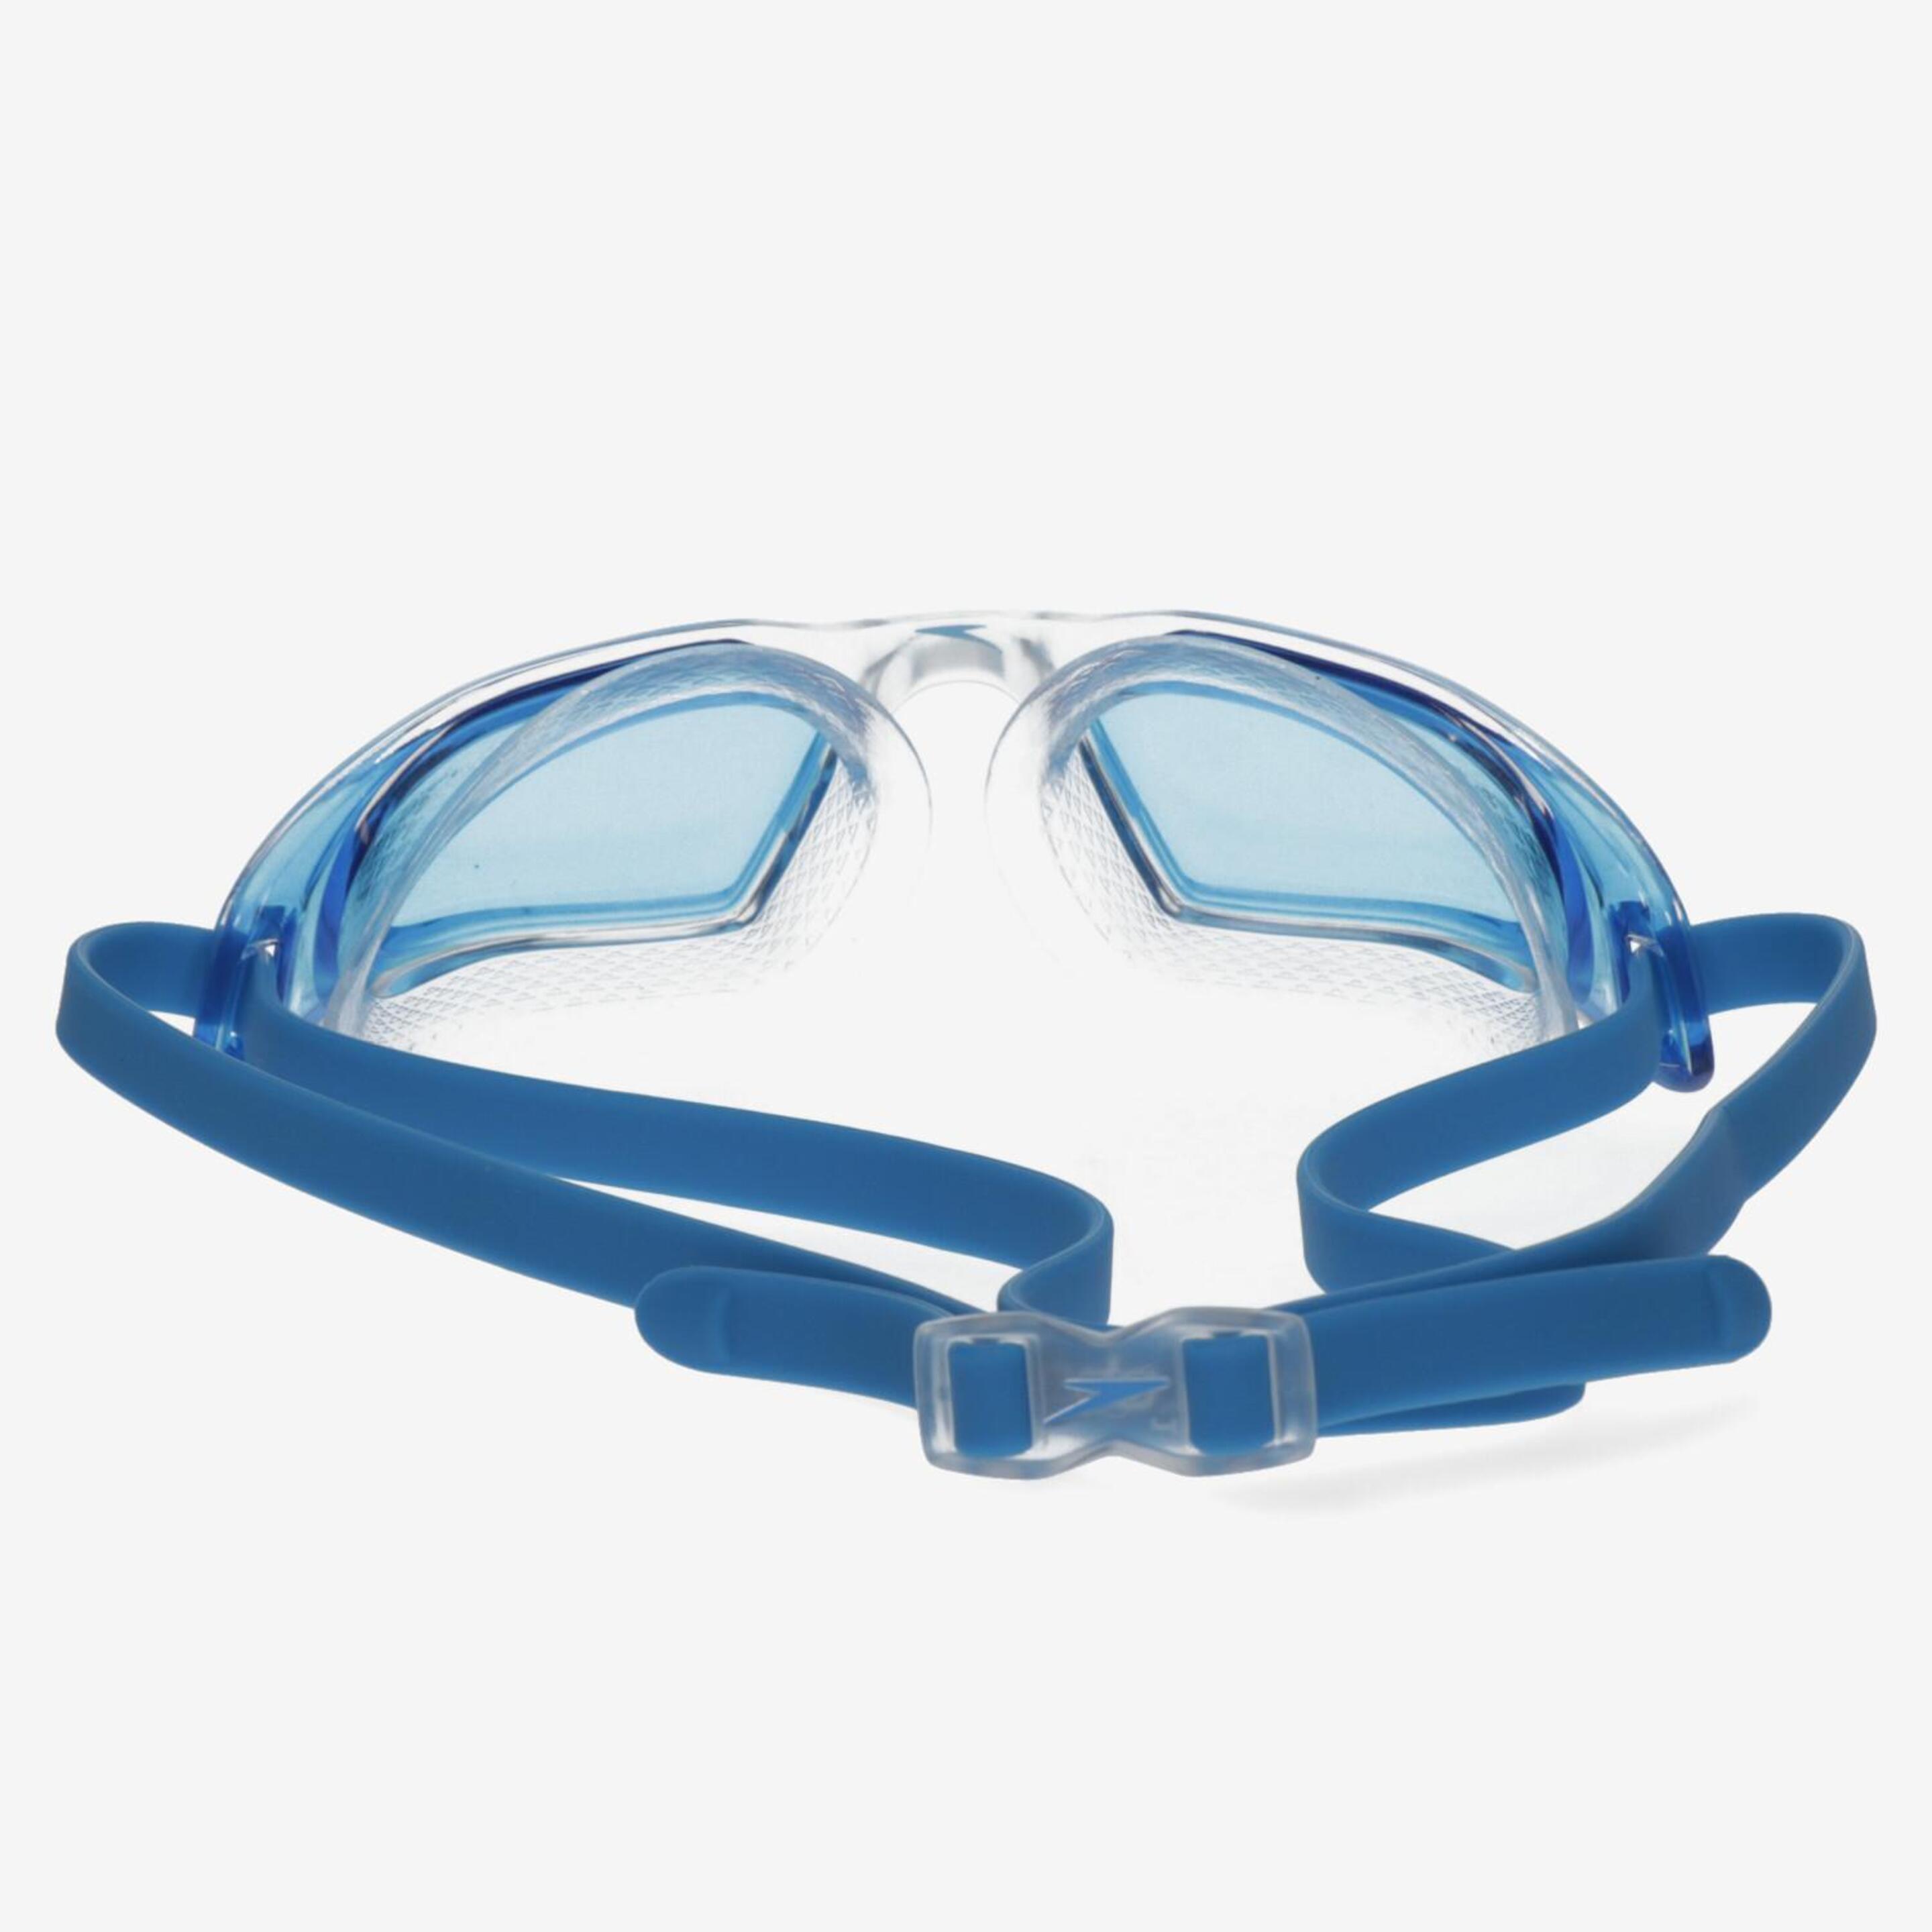 Gafas Natación Speedo Hydropulse Azules - Gafas Piscina  MKP